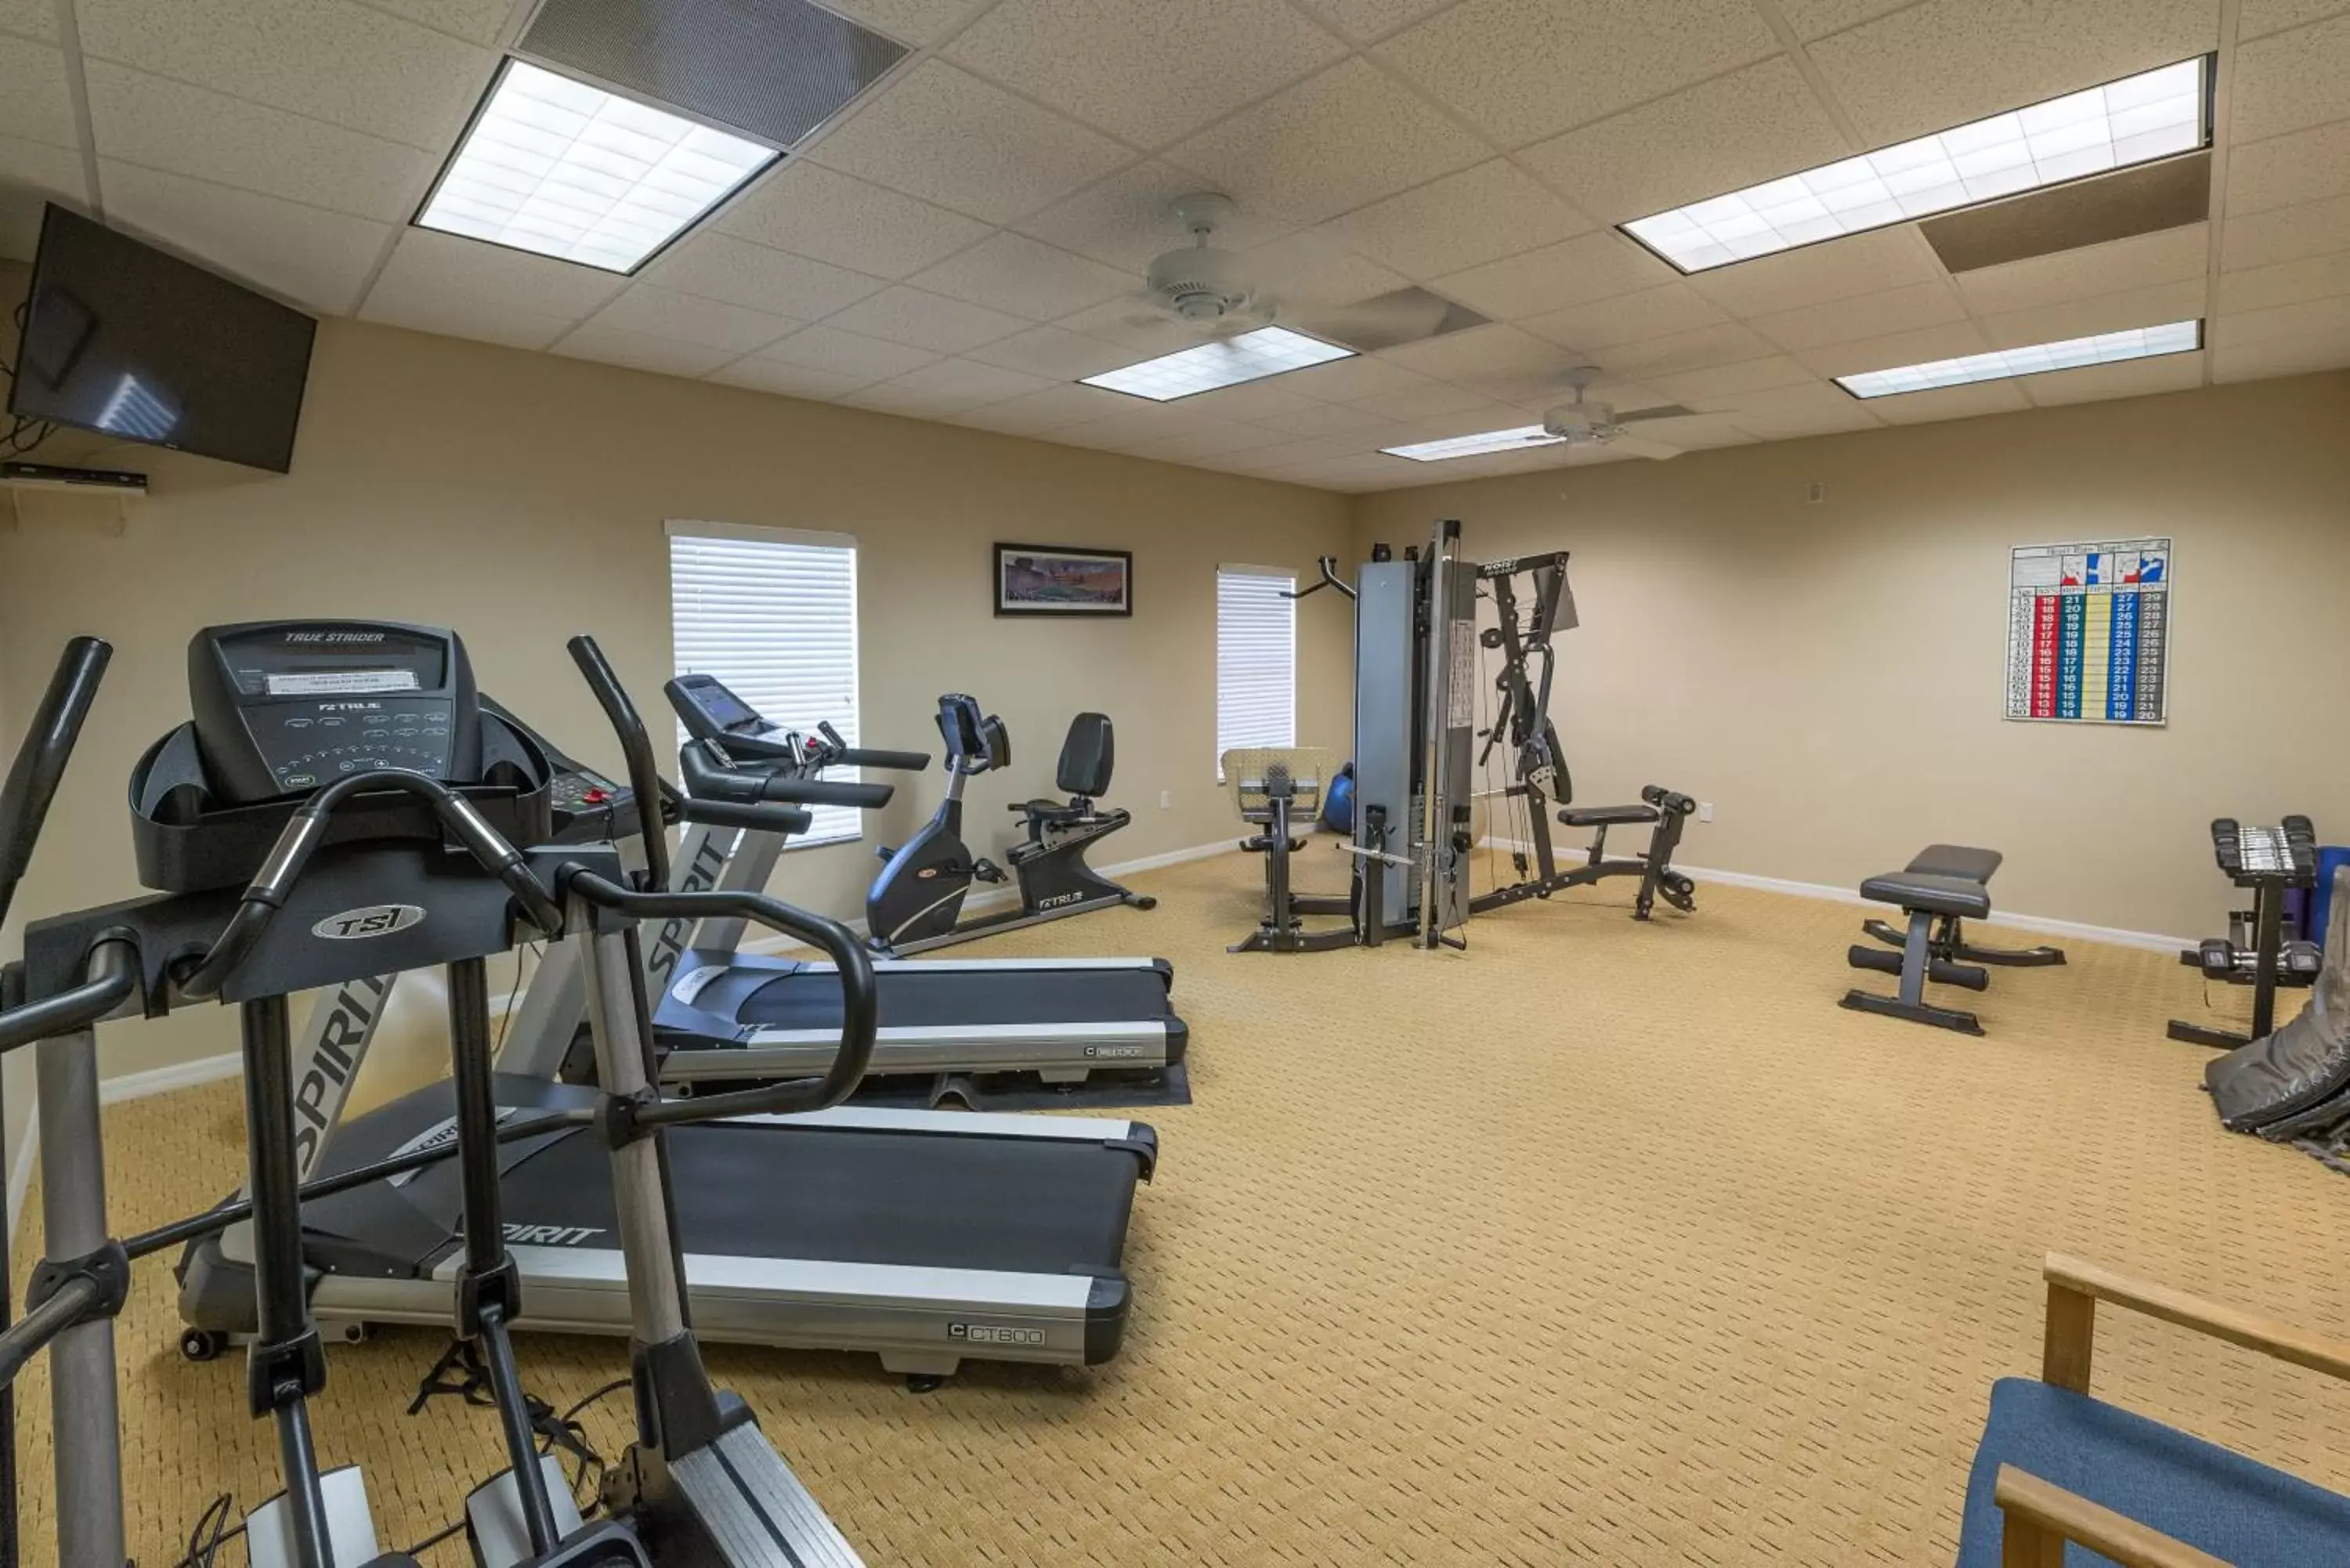 Fitness centre/facilities, Fitness Center/Facilities in Lehigh Resort Club, a VRI resort